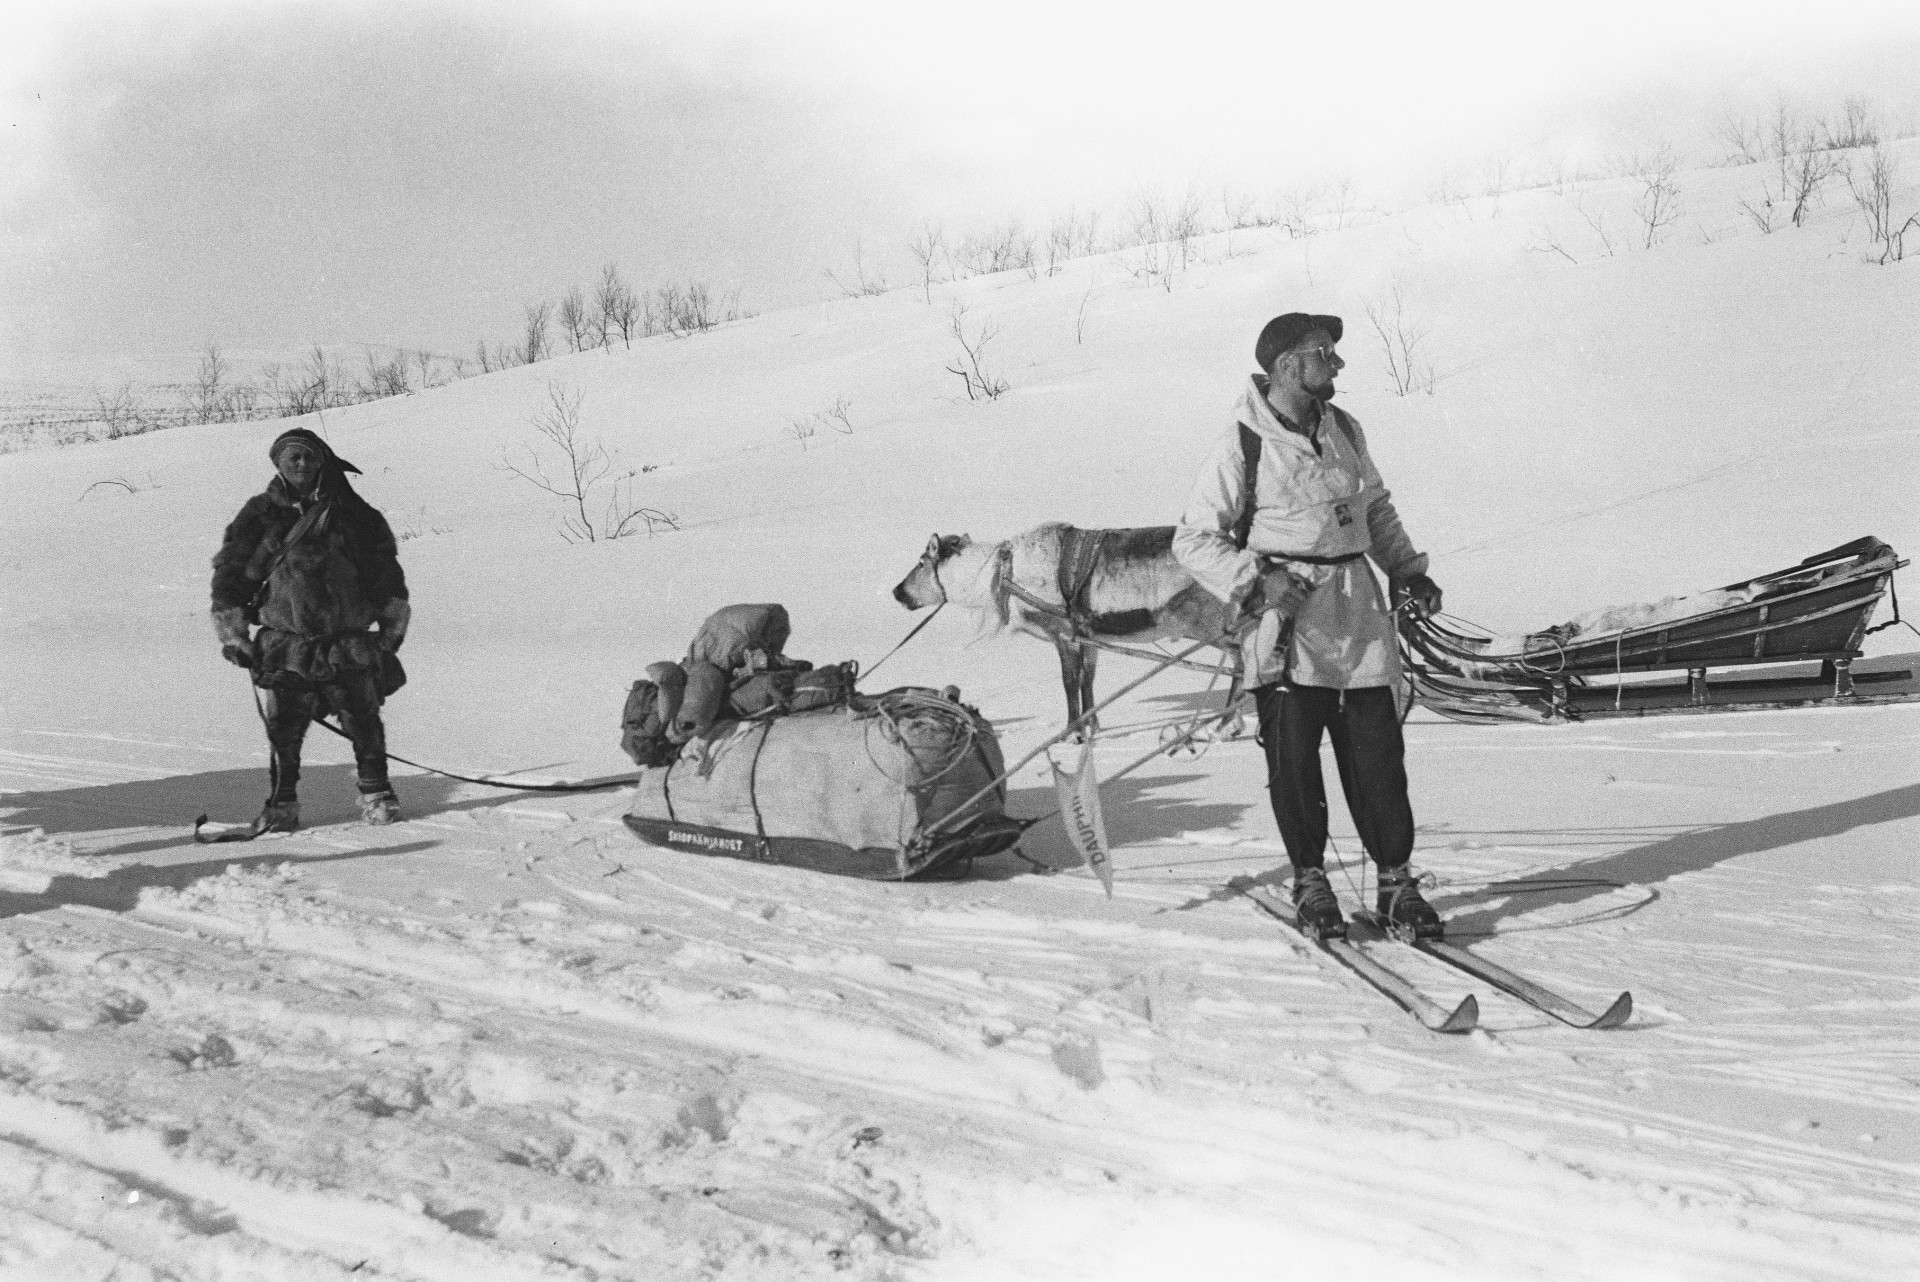 Expédition Cap Nord 1948 Laponie